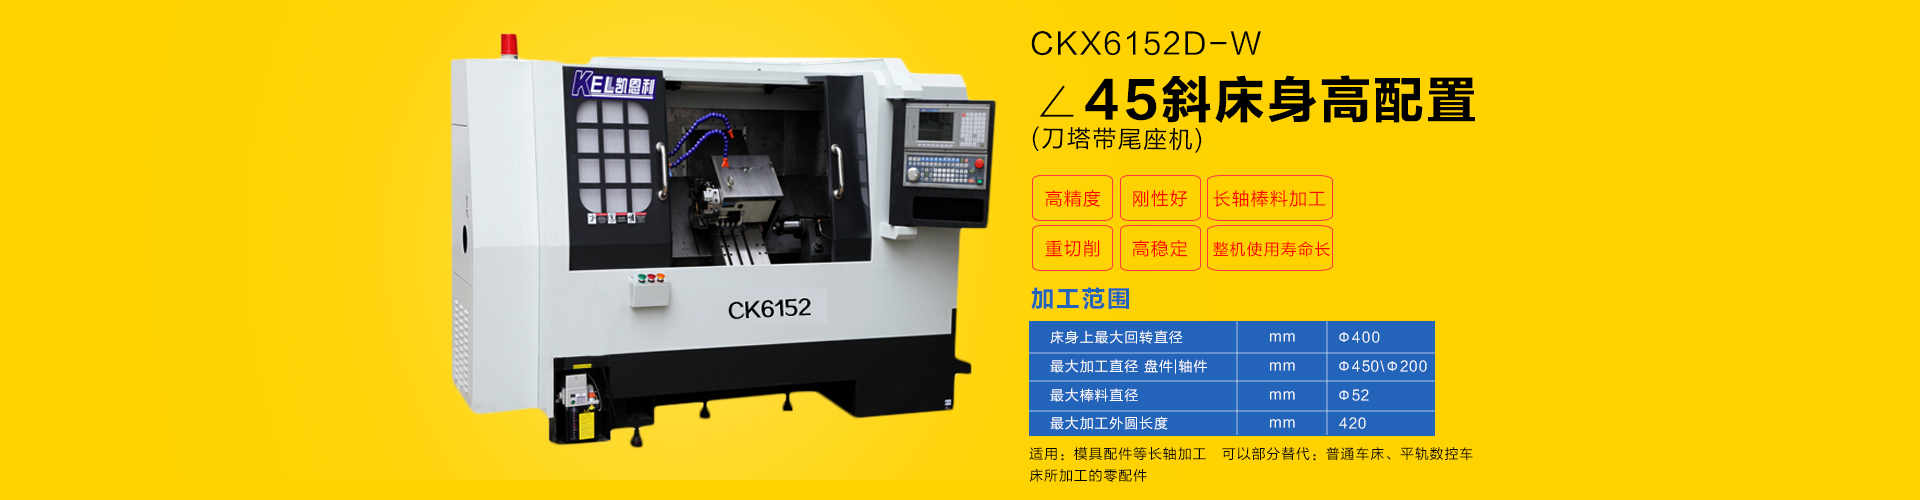 CKX6152D-W 刀塔带尾座